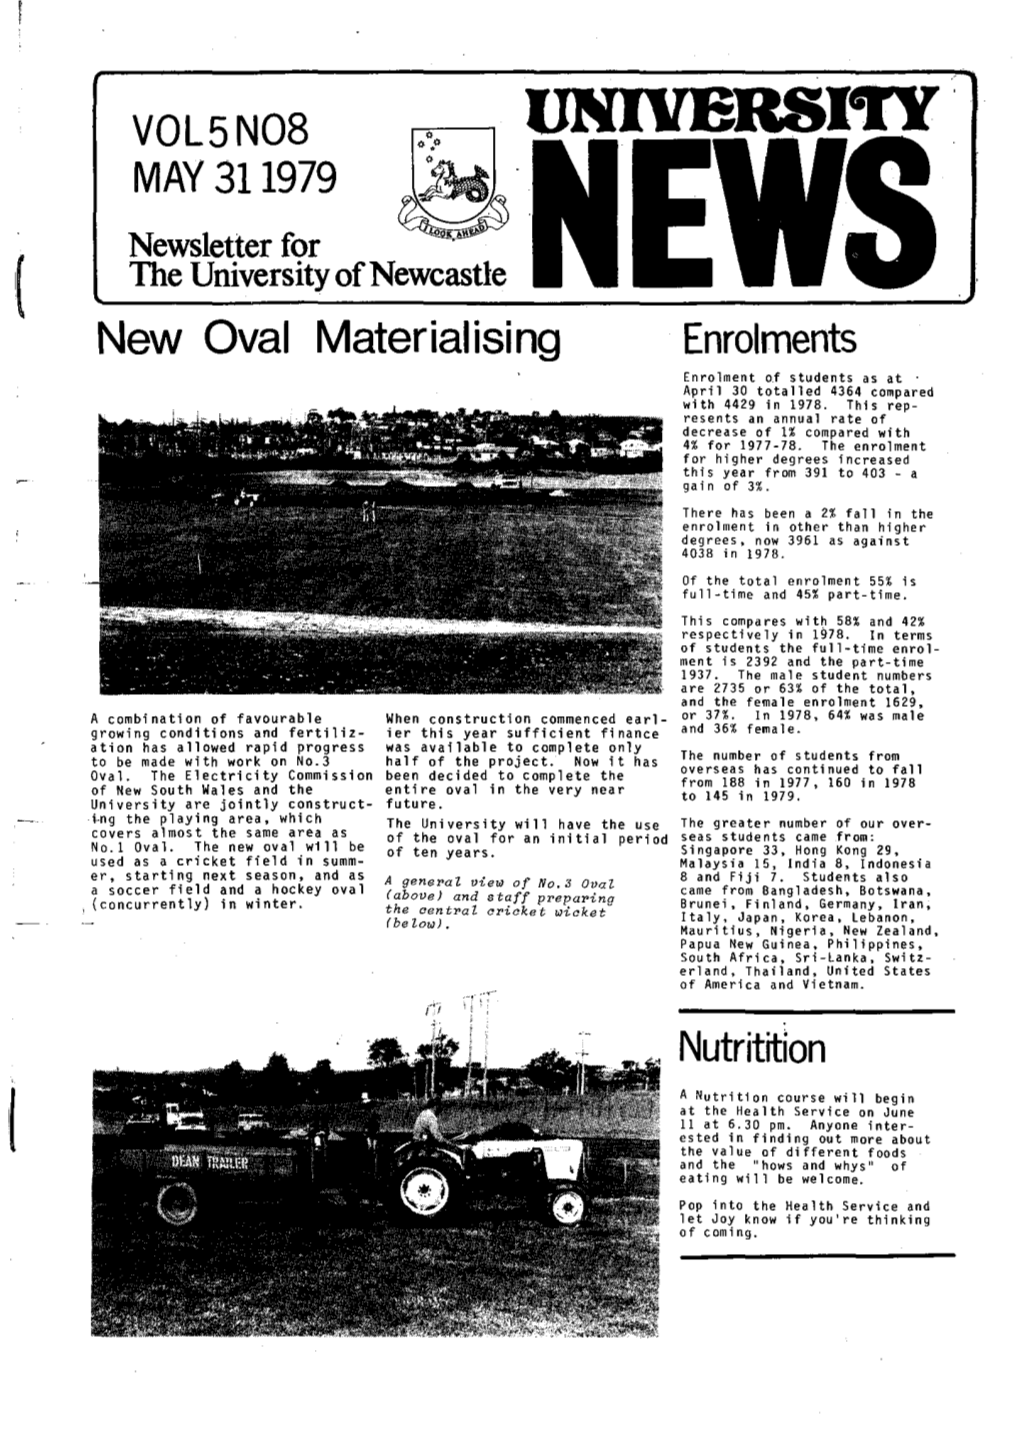 The University News, Vol. 5, No. 8, May 31, 1979